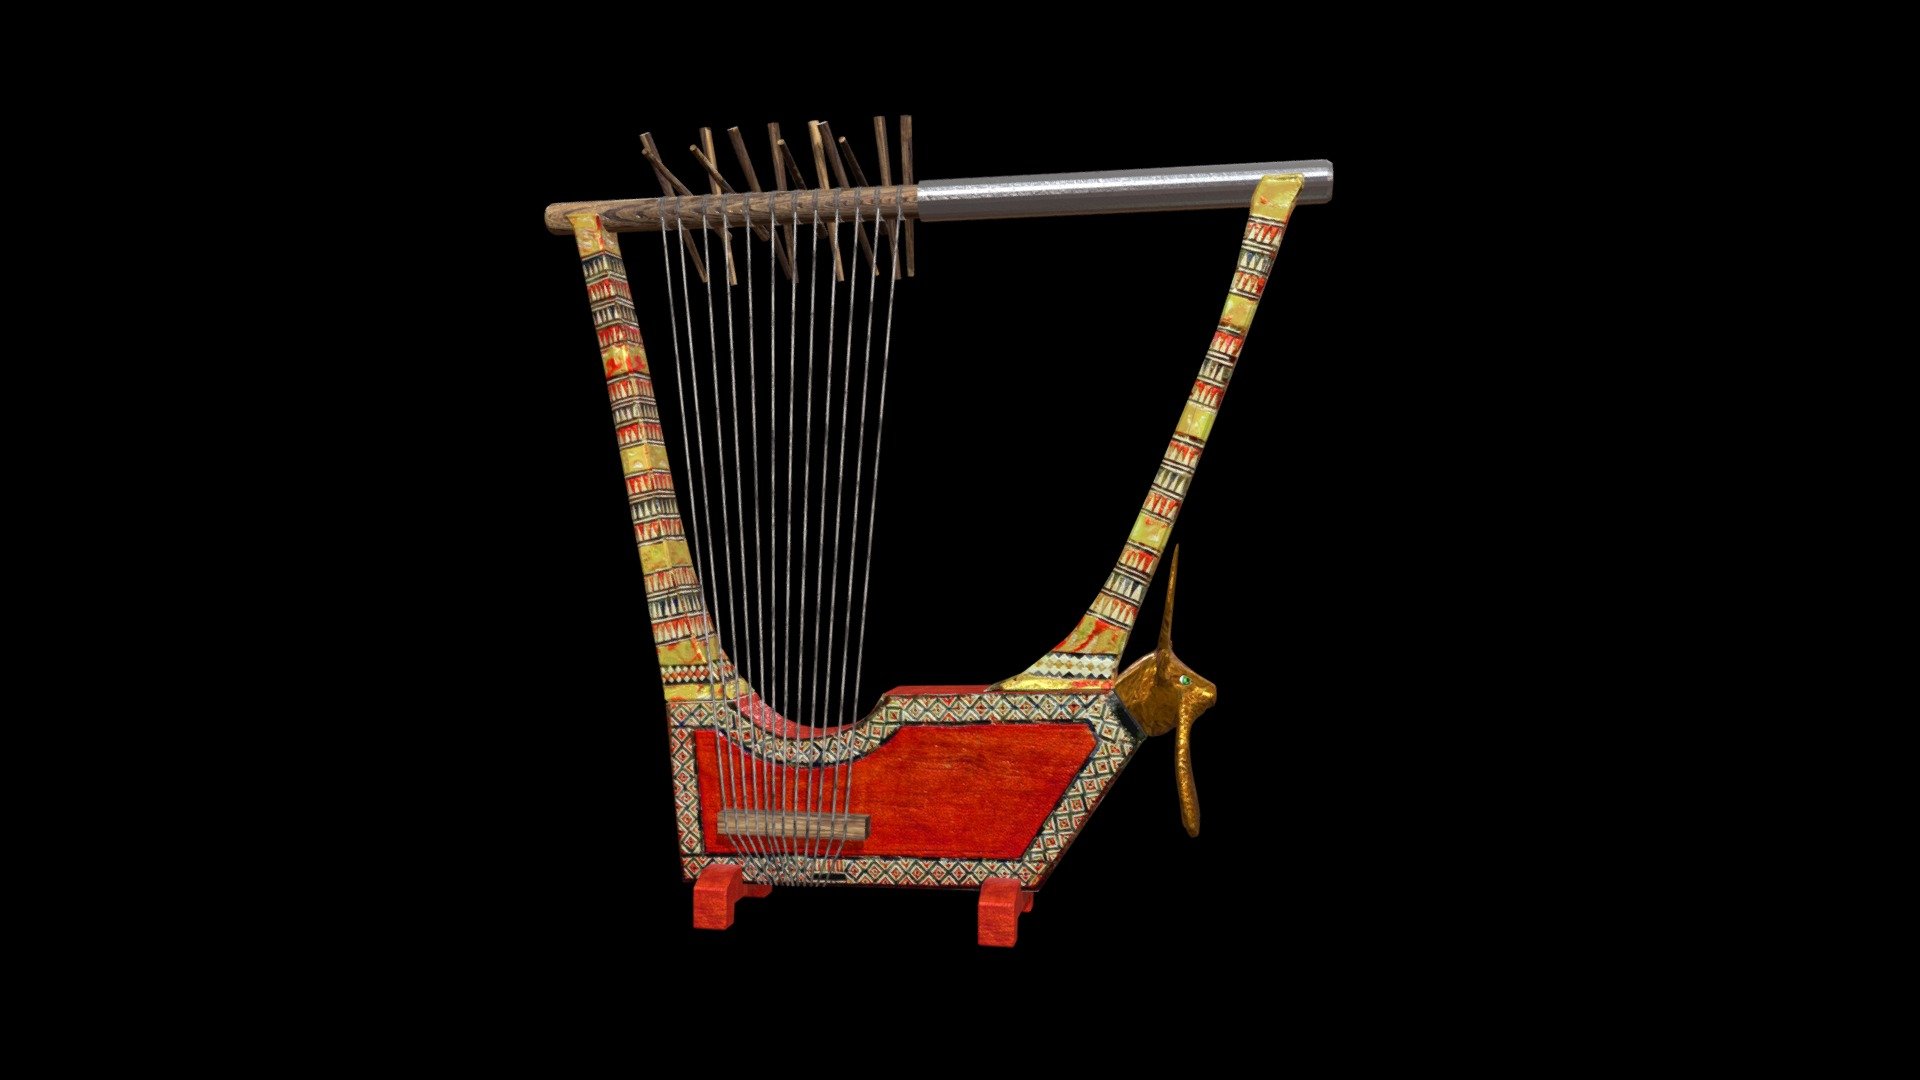 Included 3D formats OBJ

Strumento Musicale della Mesopotamia
Le arpe e le lire di Ur sono un gruppo di strumenti musicali a corda risalenti a circa 2.500 anni prima di Cristo e rinvenuti nel 1929 durante gli scavi condotti nell'antica città sumerica di Ur, nell'odierno Iraq, dall'archeologo statunitense Leonard Woolley. Si tratta dei più antichi cordofoni di cui si abbia testimonianza.

Gli strumenti, ricostruiti, sono conservati in tre diversi musei, il museo nazionale iracheno di Baghdad, il British Museum di Londra e lo University of Pennsylvania Museum of Archaeology and Anthropology.

An image here - Cetra di Ur - Buy Royalty Free 3D model by Davide Specchi (@Davide.Specchi) 3d model